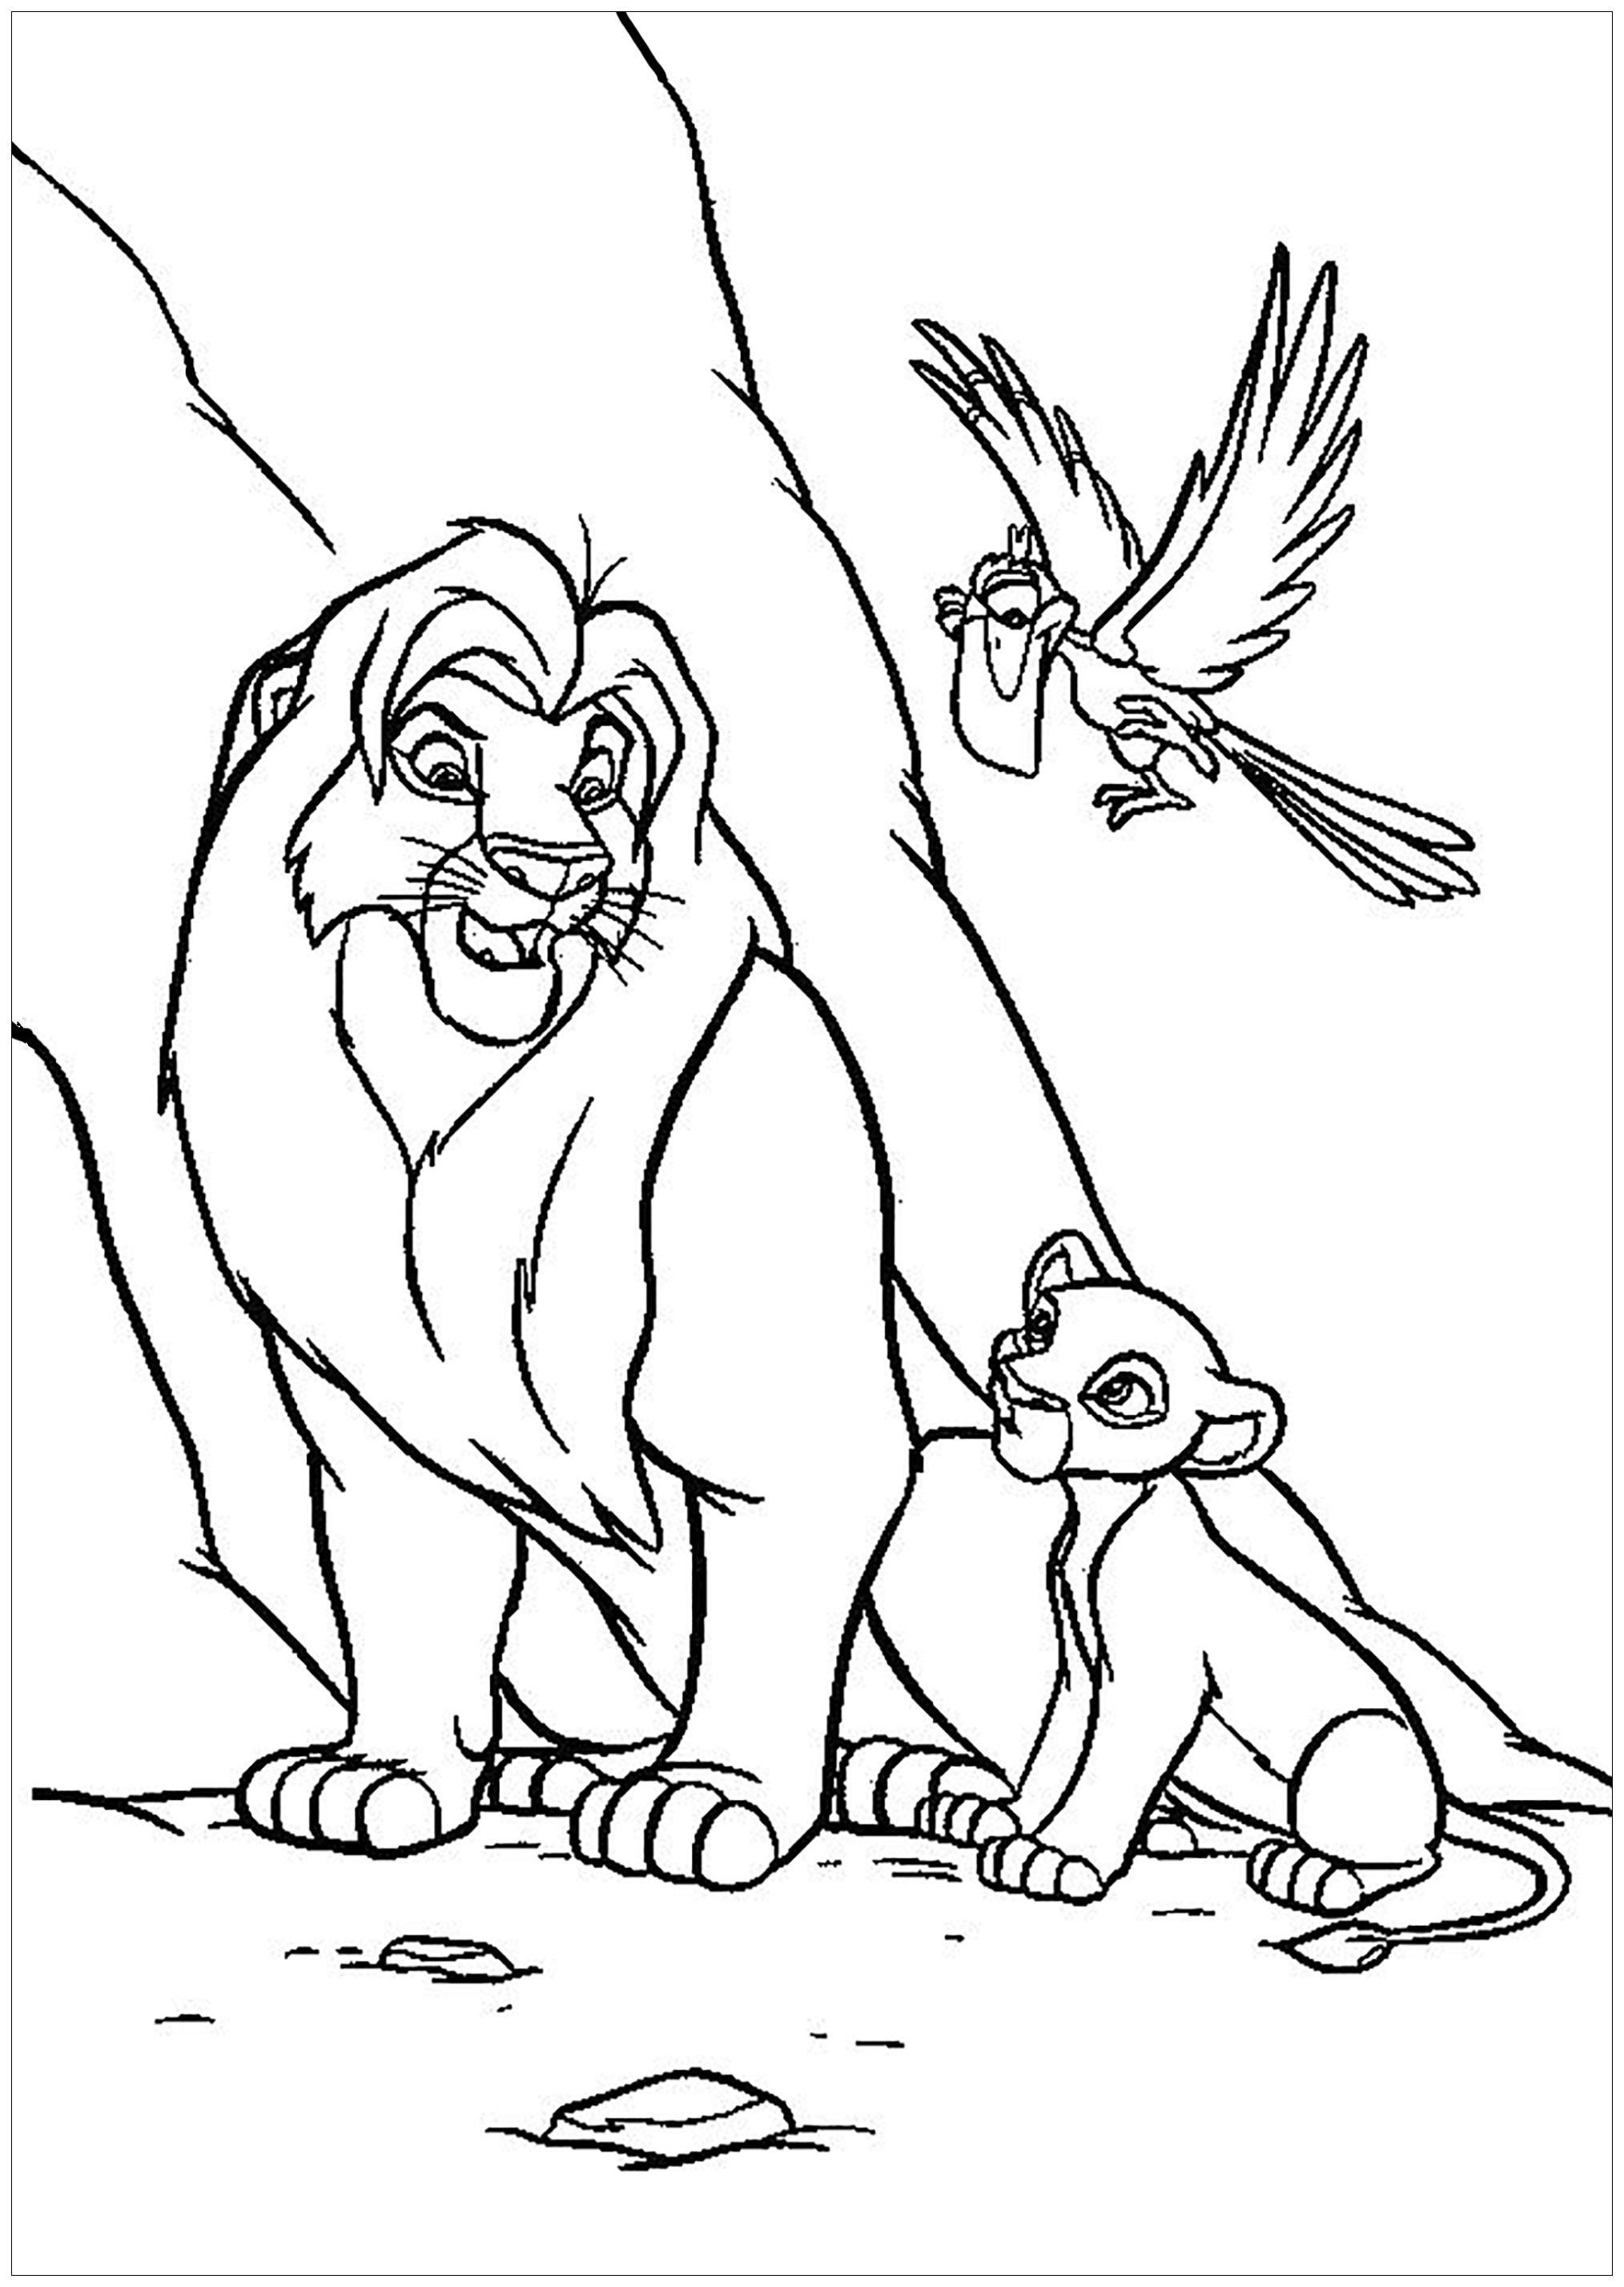 Página para colorir de O Rei Leão (clássico da Disney) com Mufasa e Simba, com Zazu